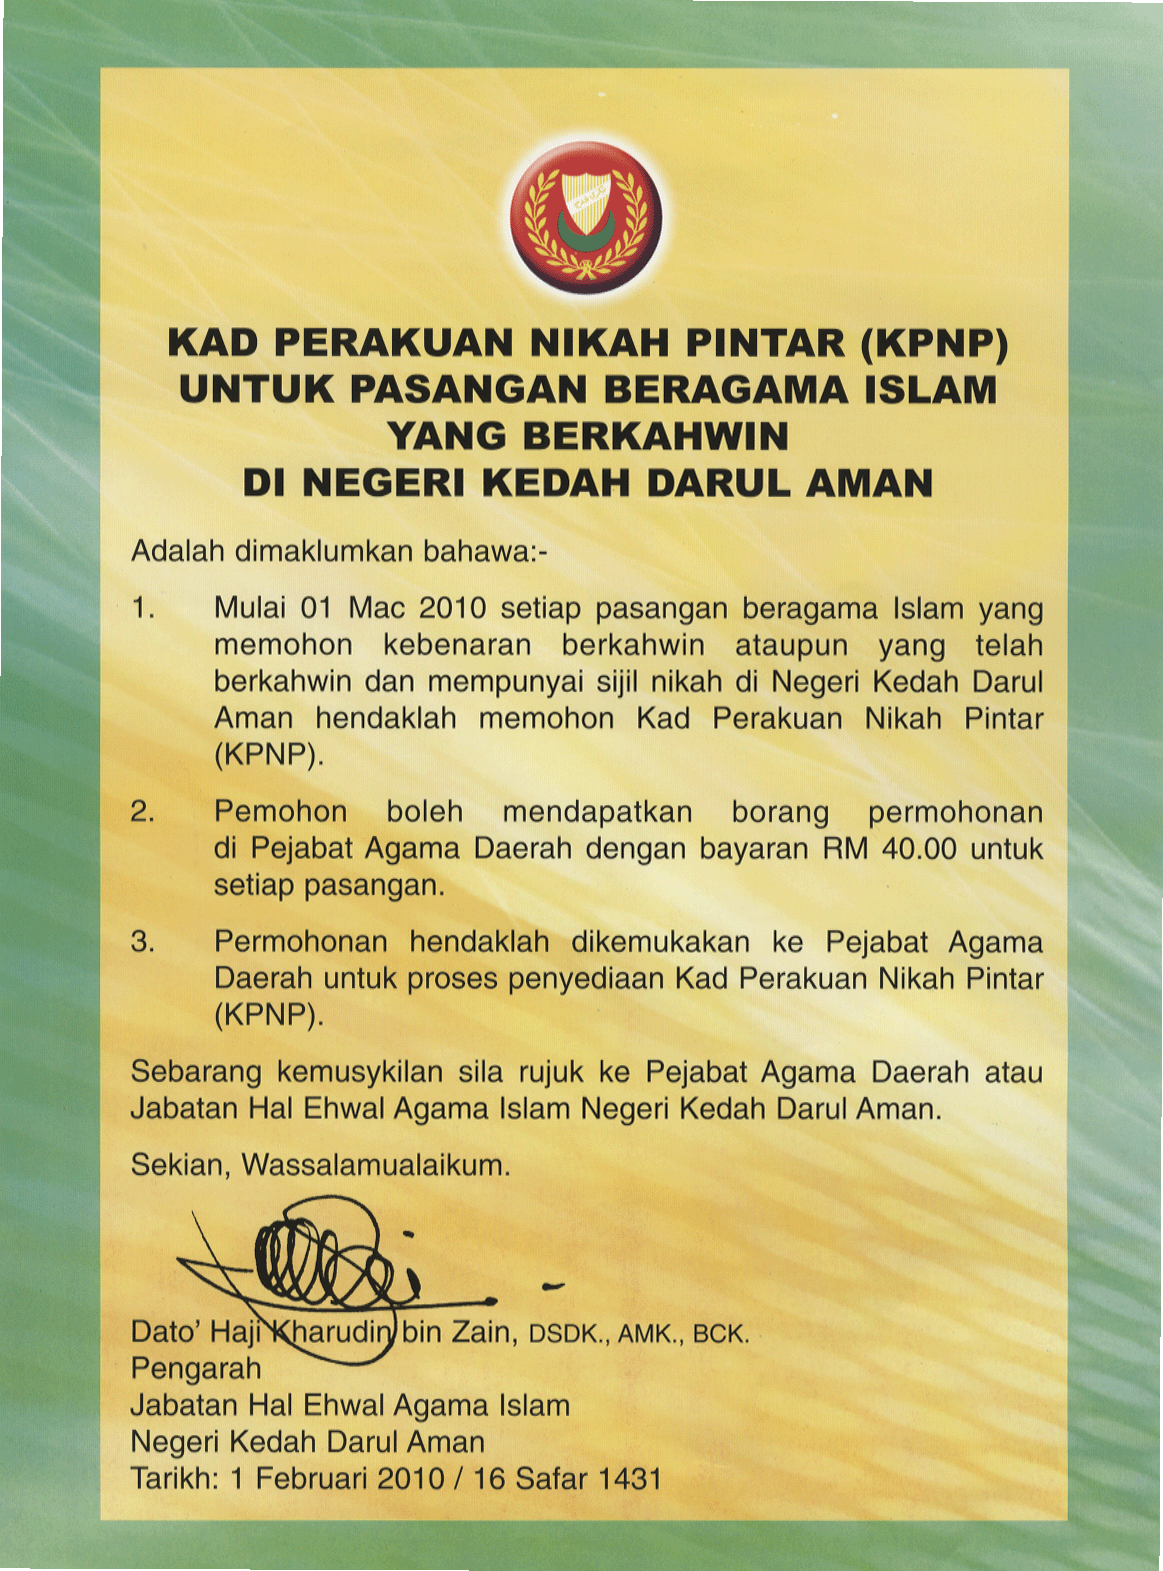 Kad Sijil Nikah Selangor Tapi tak boleh buat dekat pejabat agama daerah.